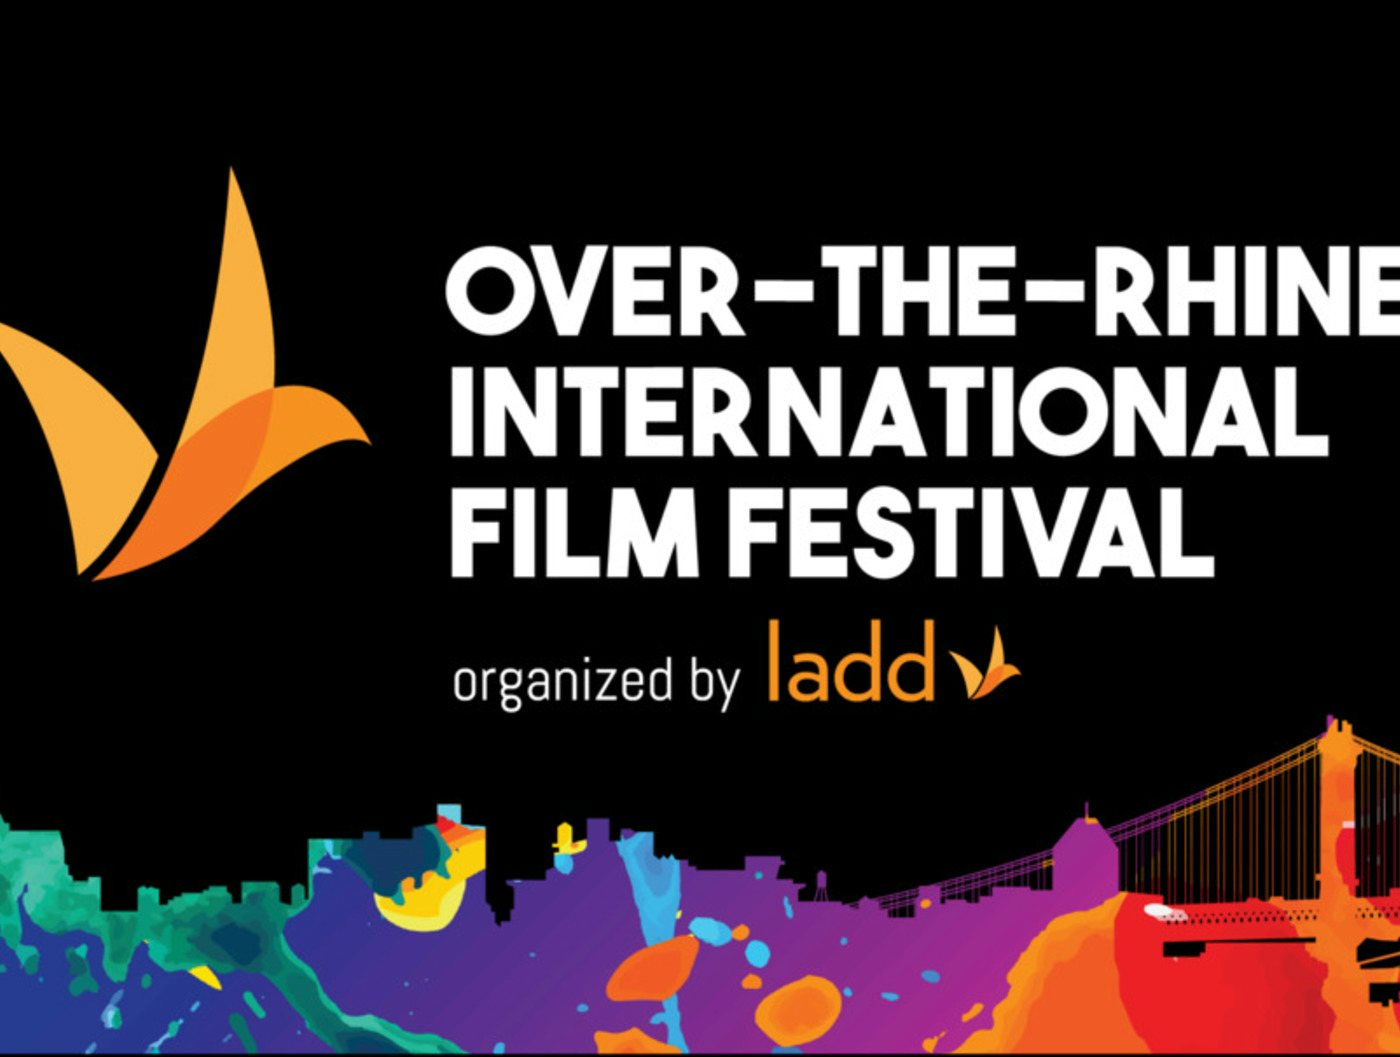 OTR Film Festival: 